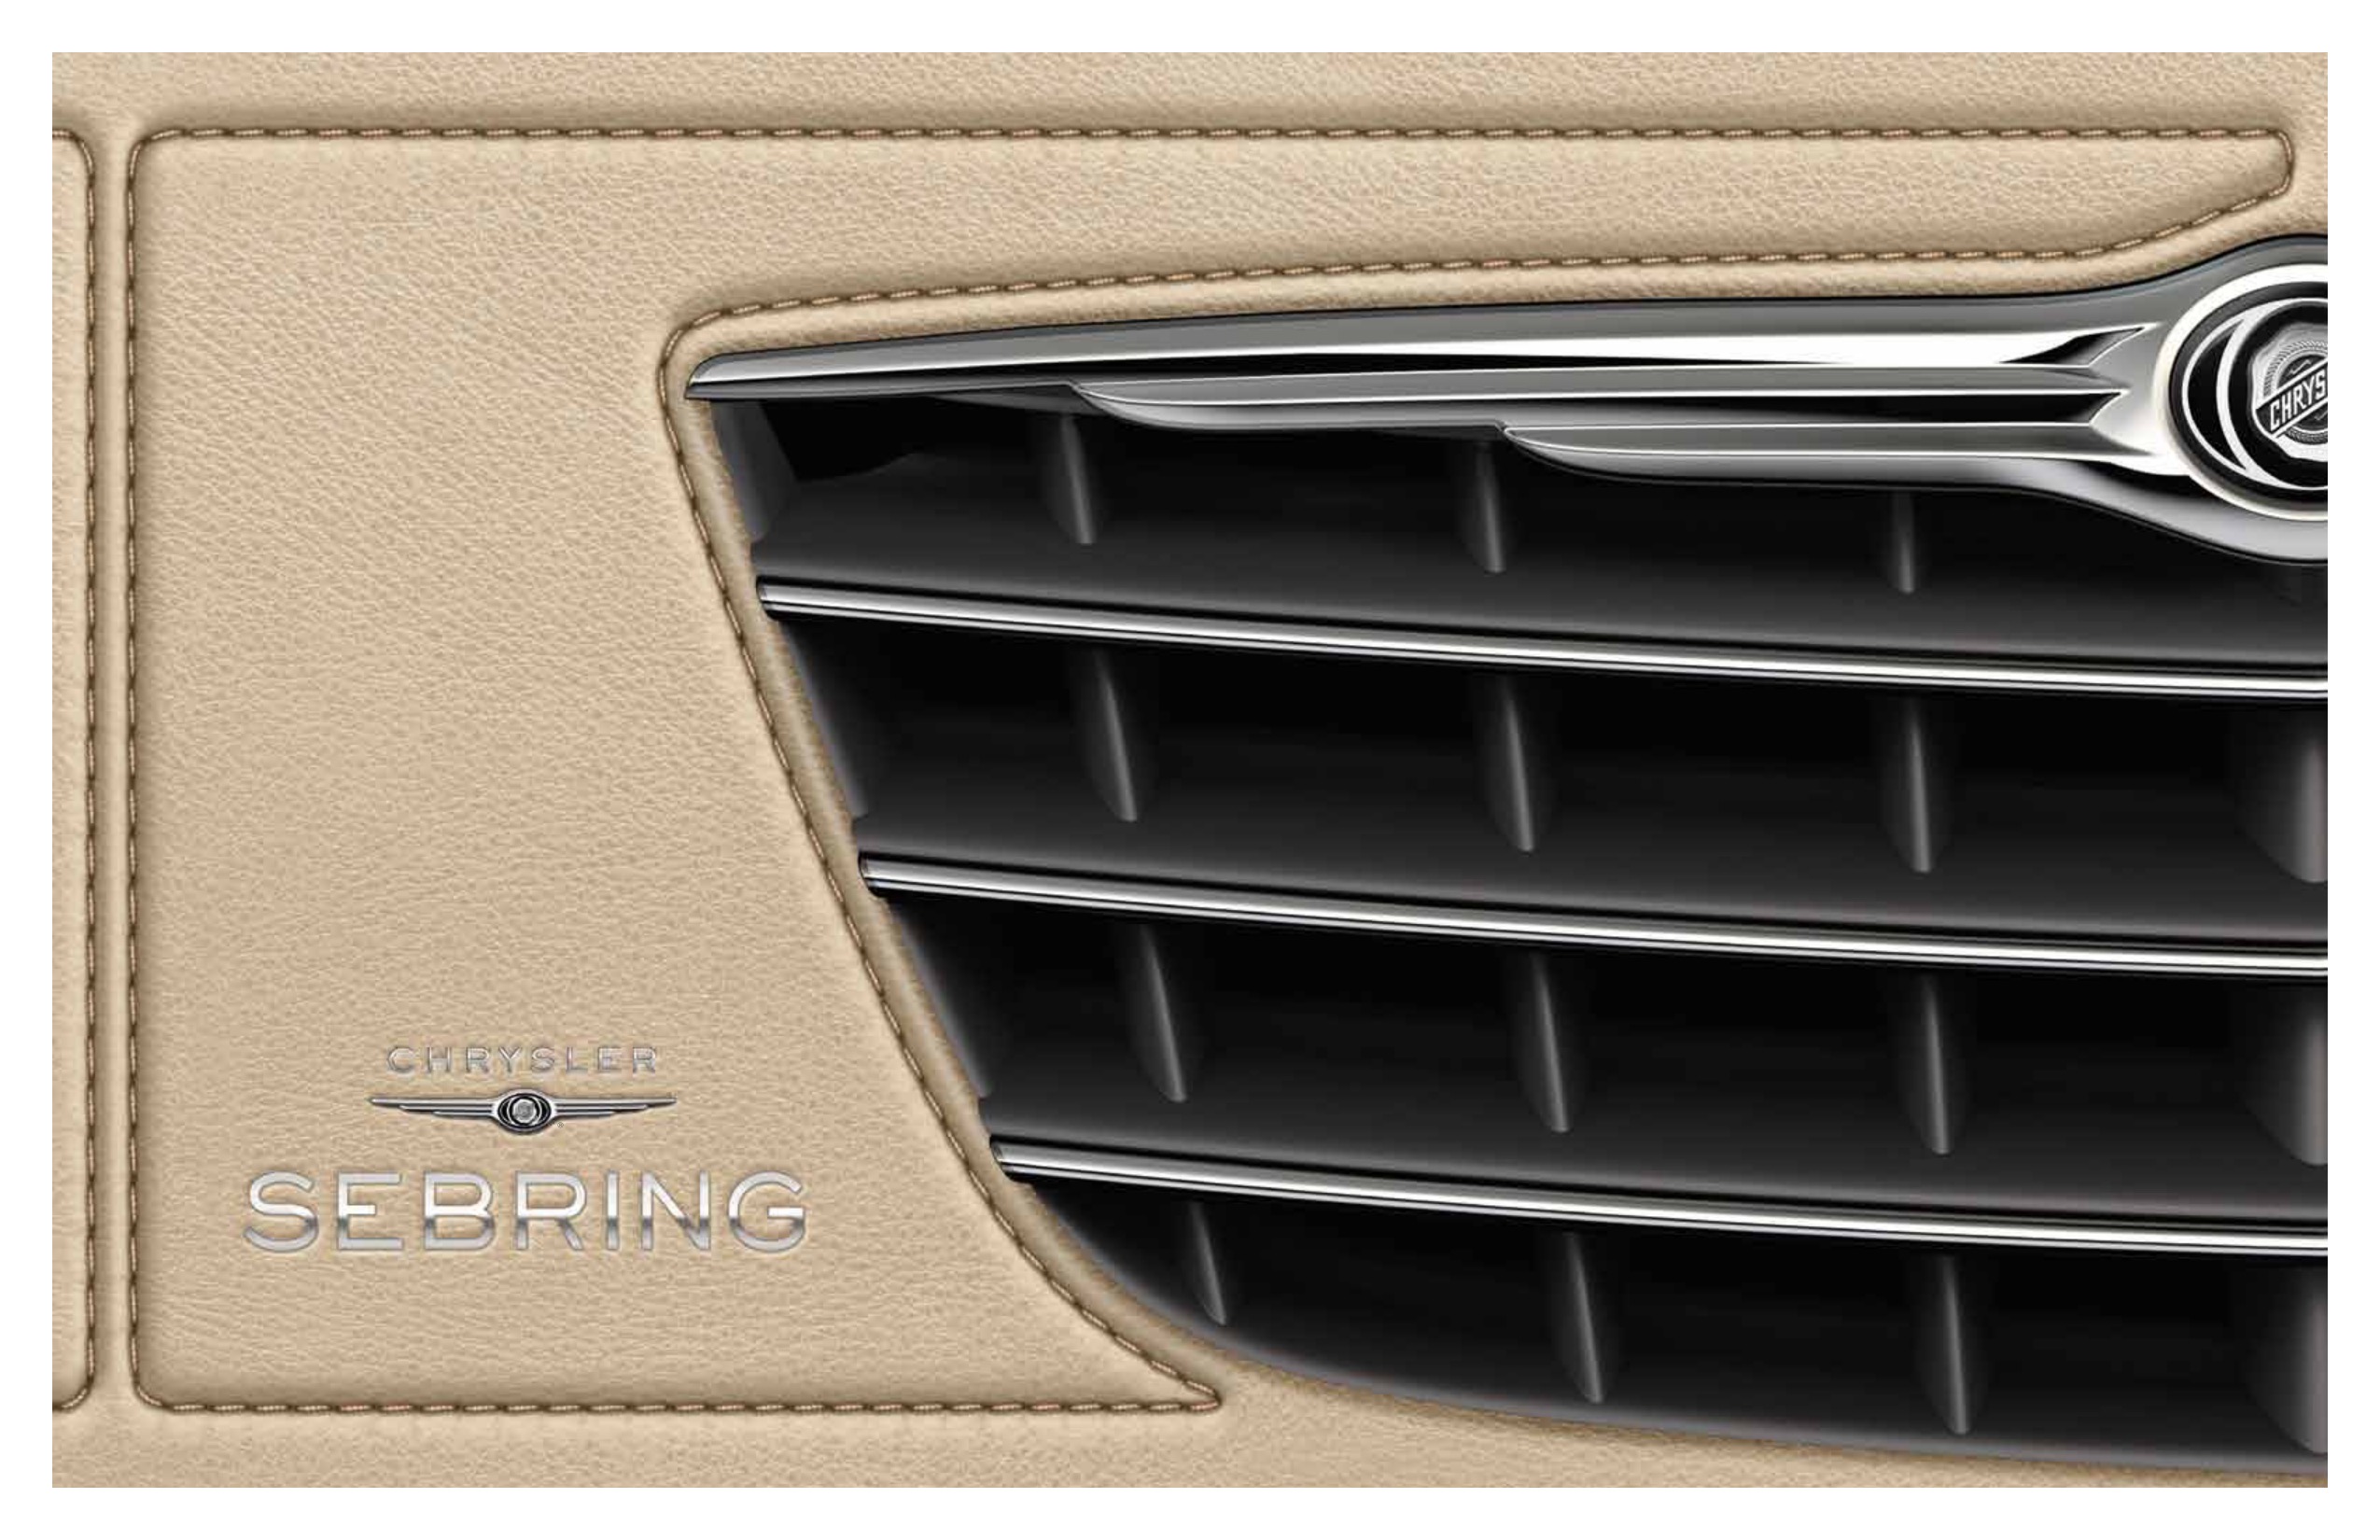 2010 Chrysler Sebring Brochure